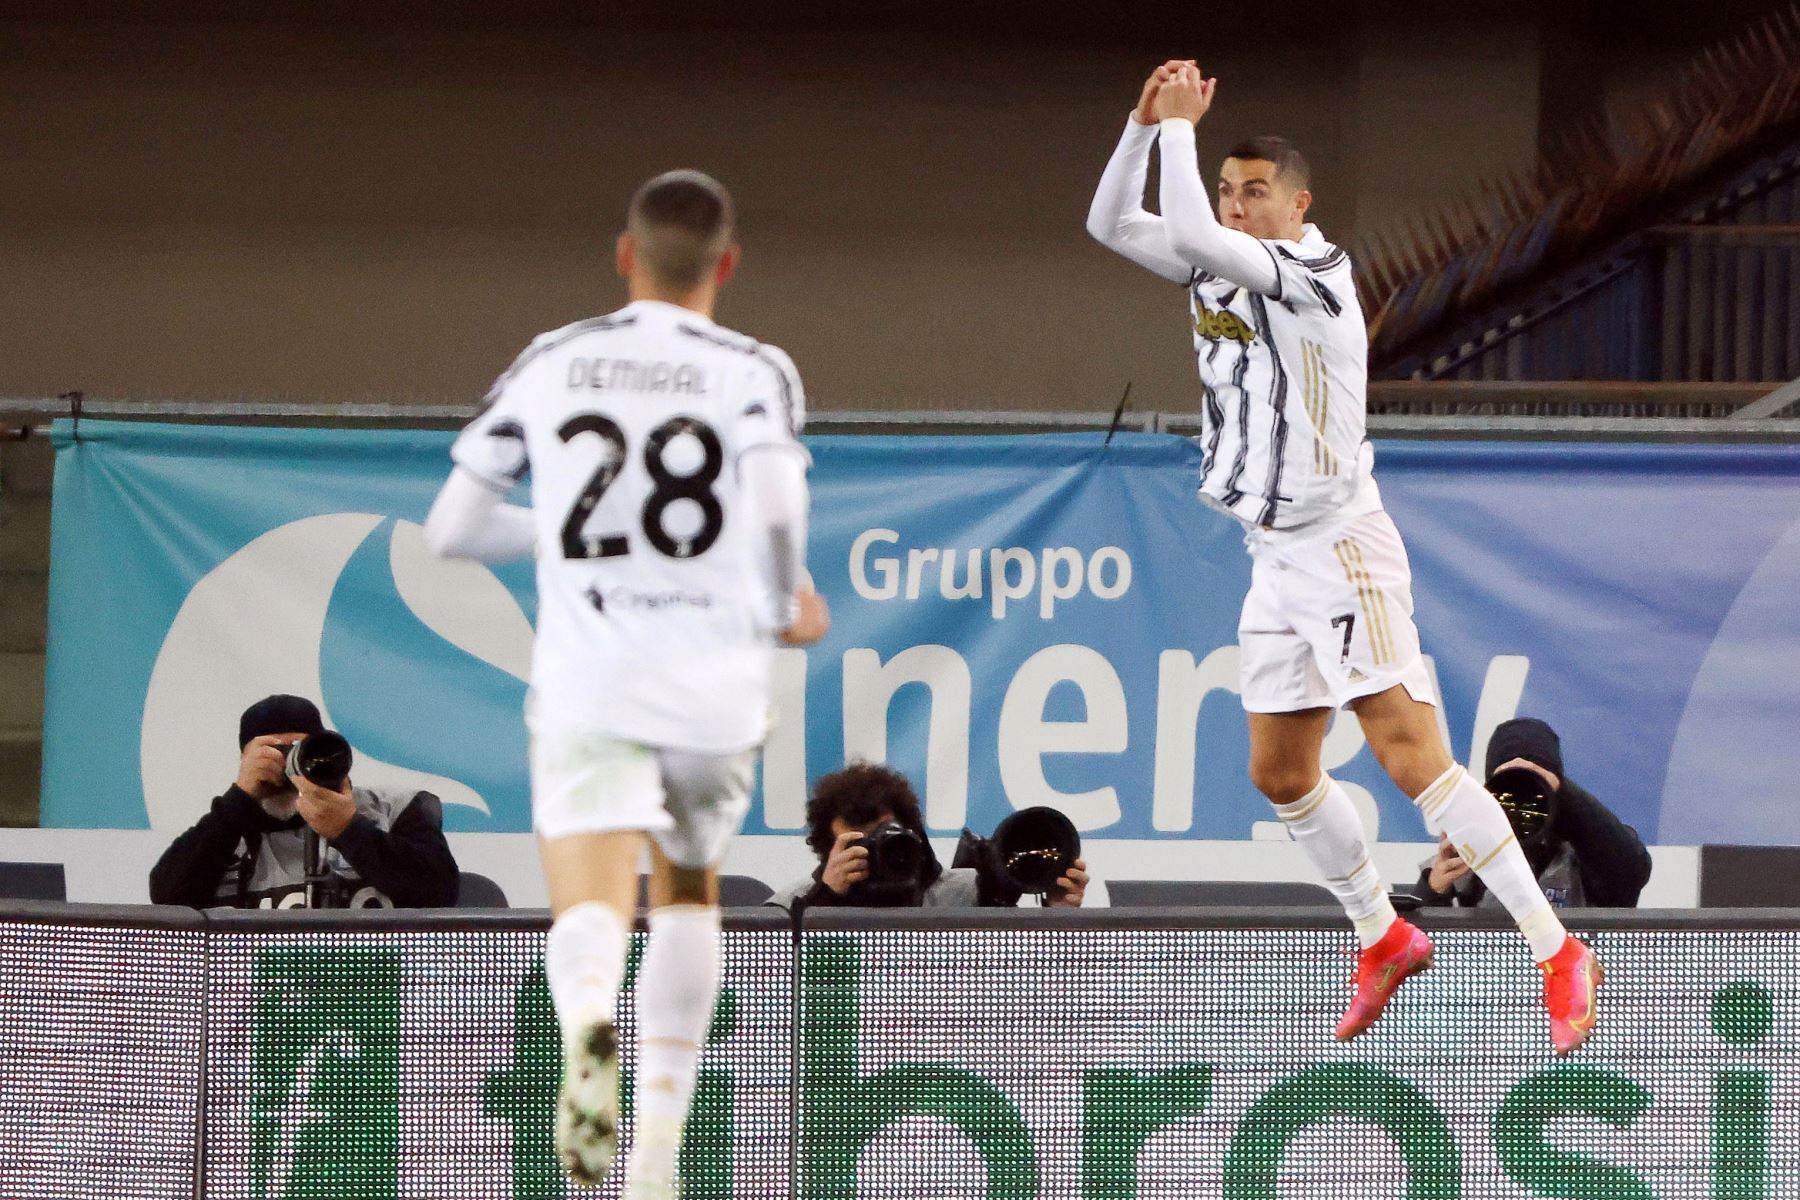 Cristiano Ronaldo de la Juventus celebra tras marcar el 1-0 durante el partido de fútbol de la Serie A italiana. Foto: EFE